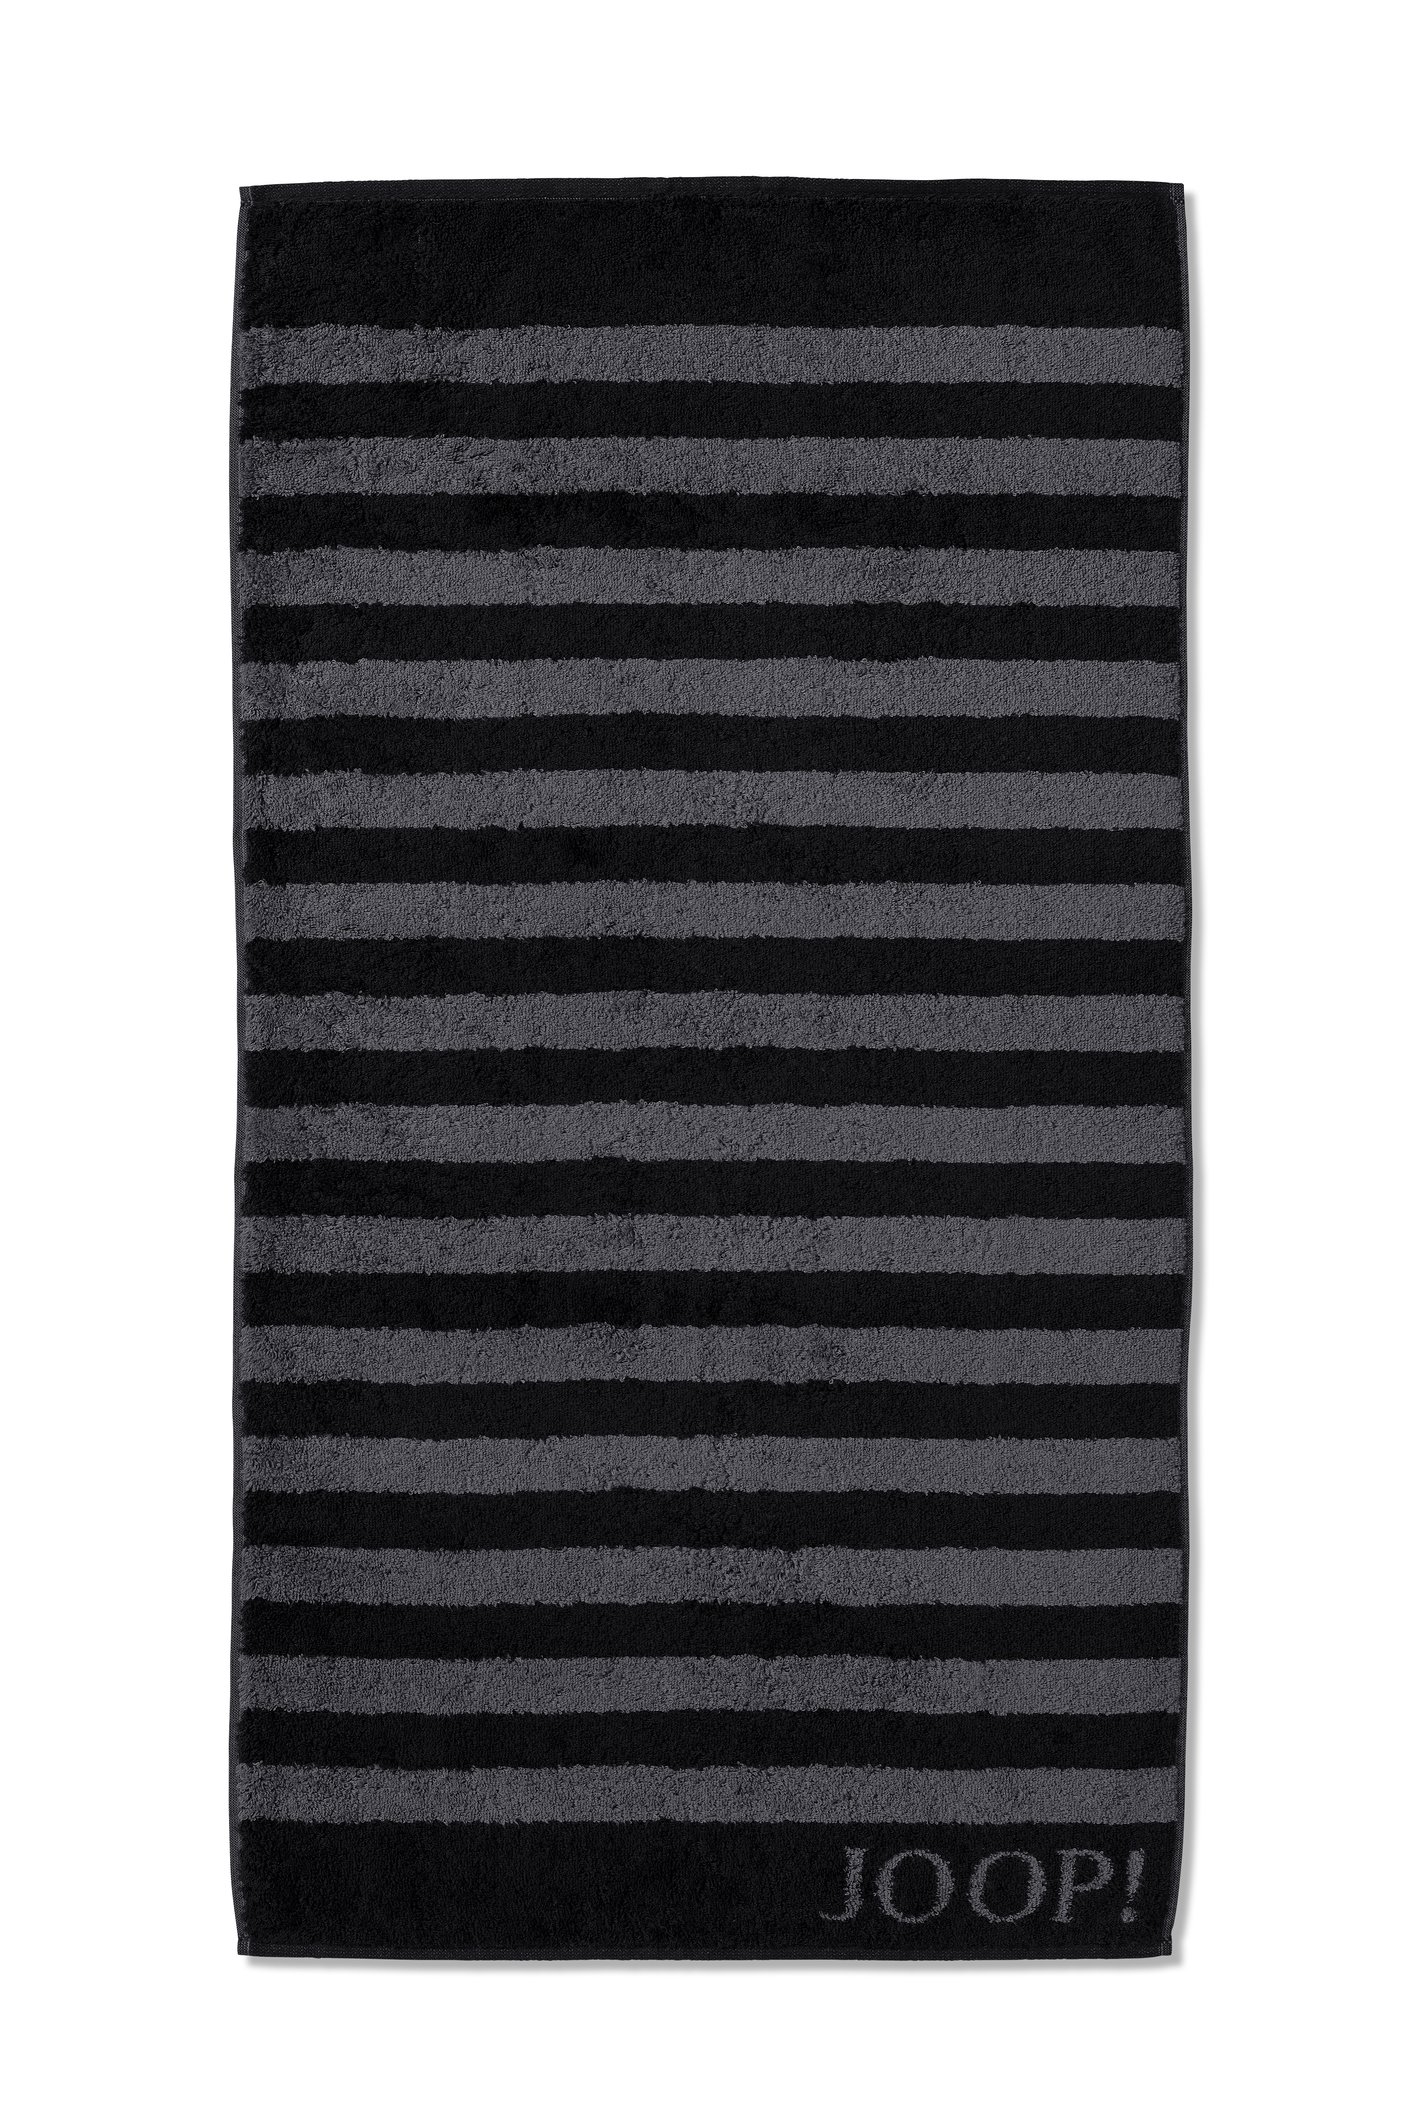 JOOP! Classic Stripes 1610-90 Schwarz Frottee Duschtuch 80x150 cm